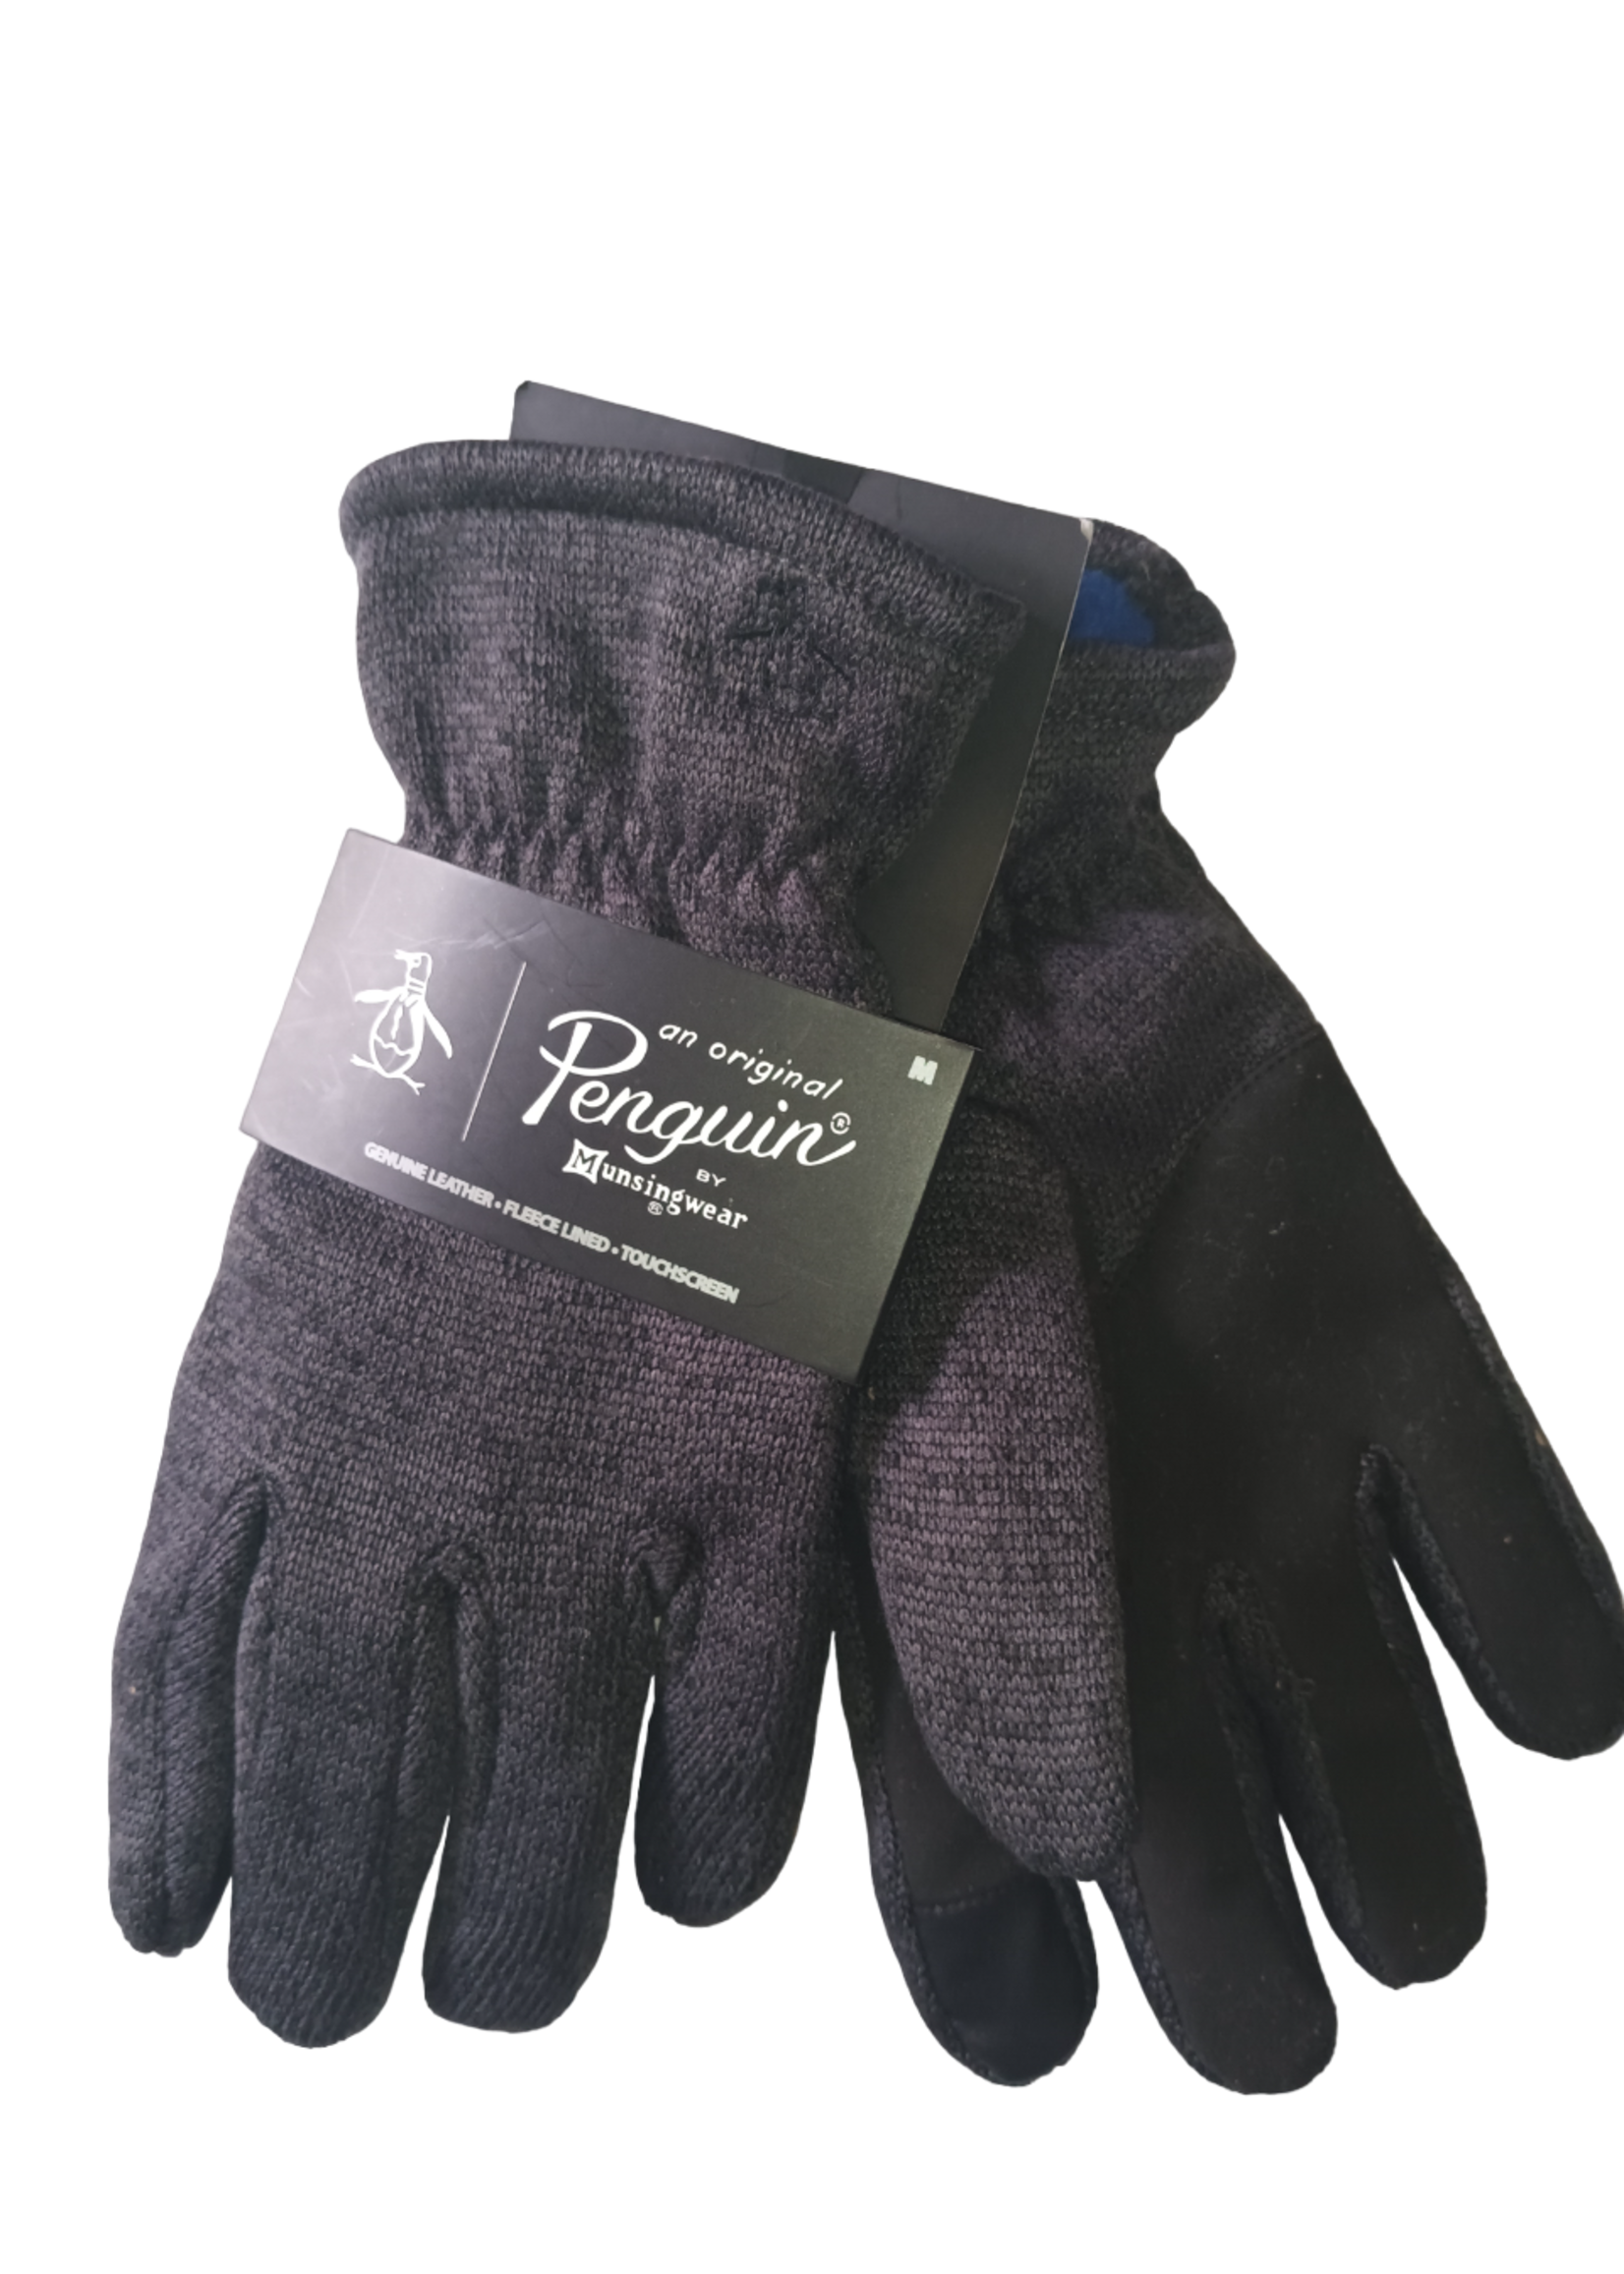 Original Penguin Original Penguin Men's Grey Gloves, M